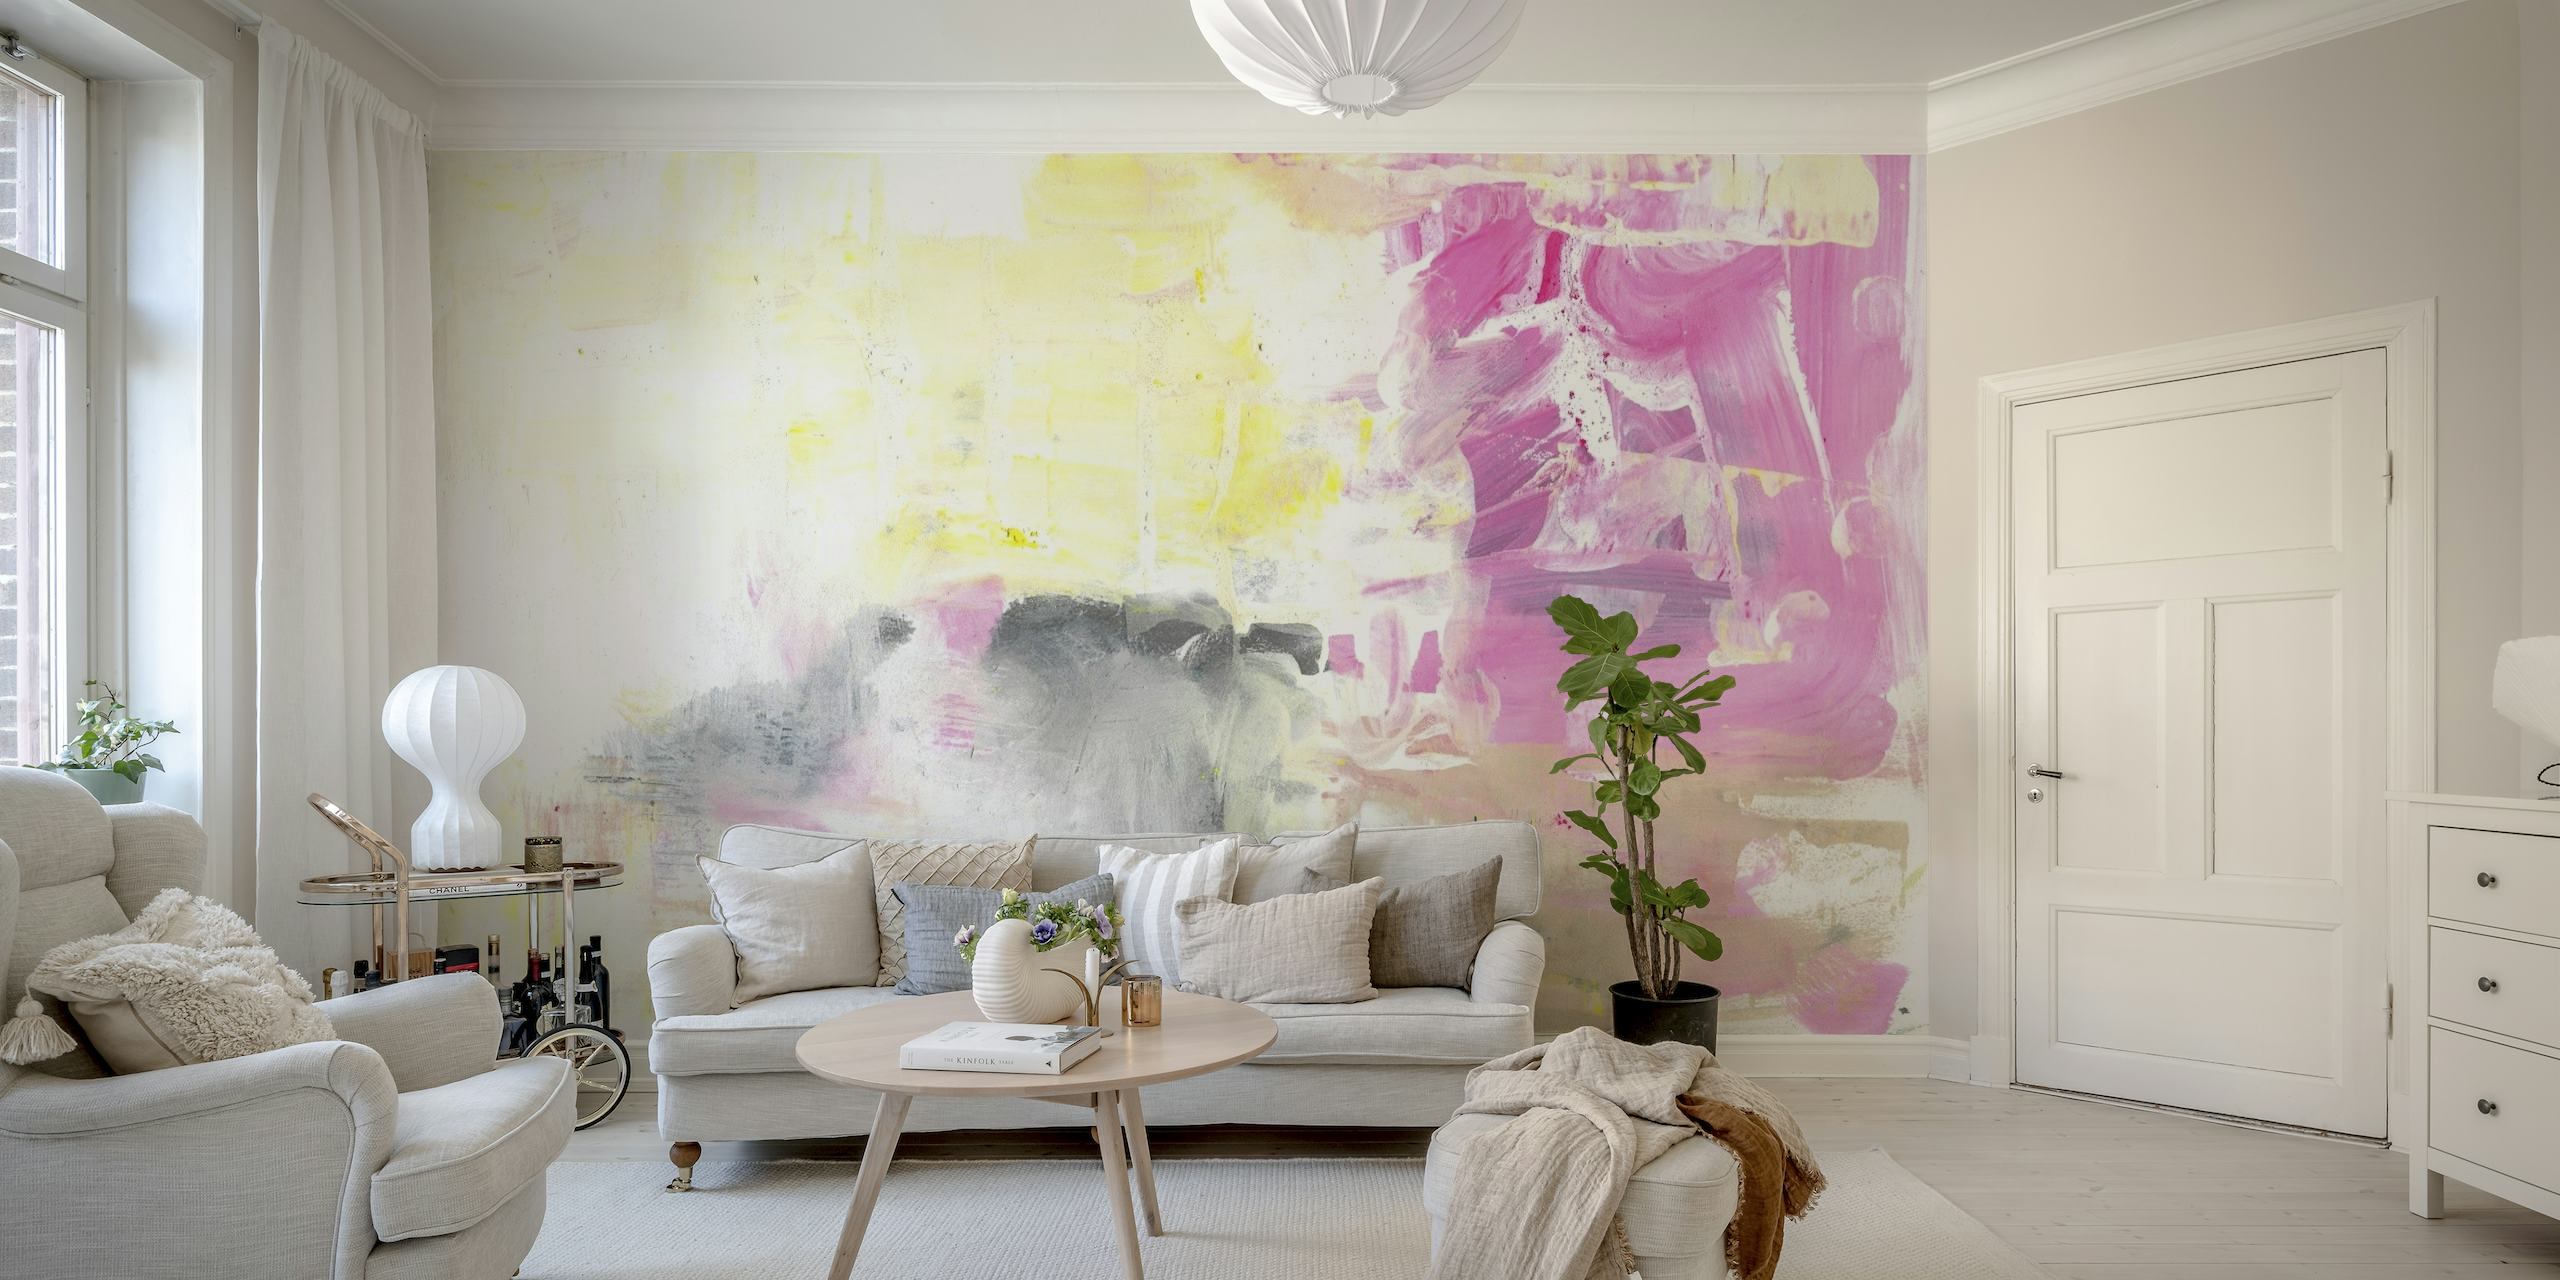 Peinture murale abstraite n° 17 avec des tons rose tendre, gris et blanc avec un pinceau expressif